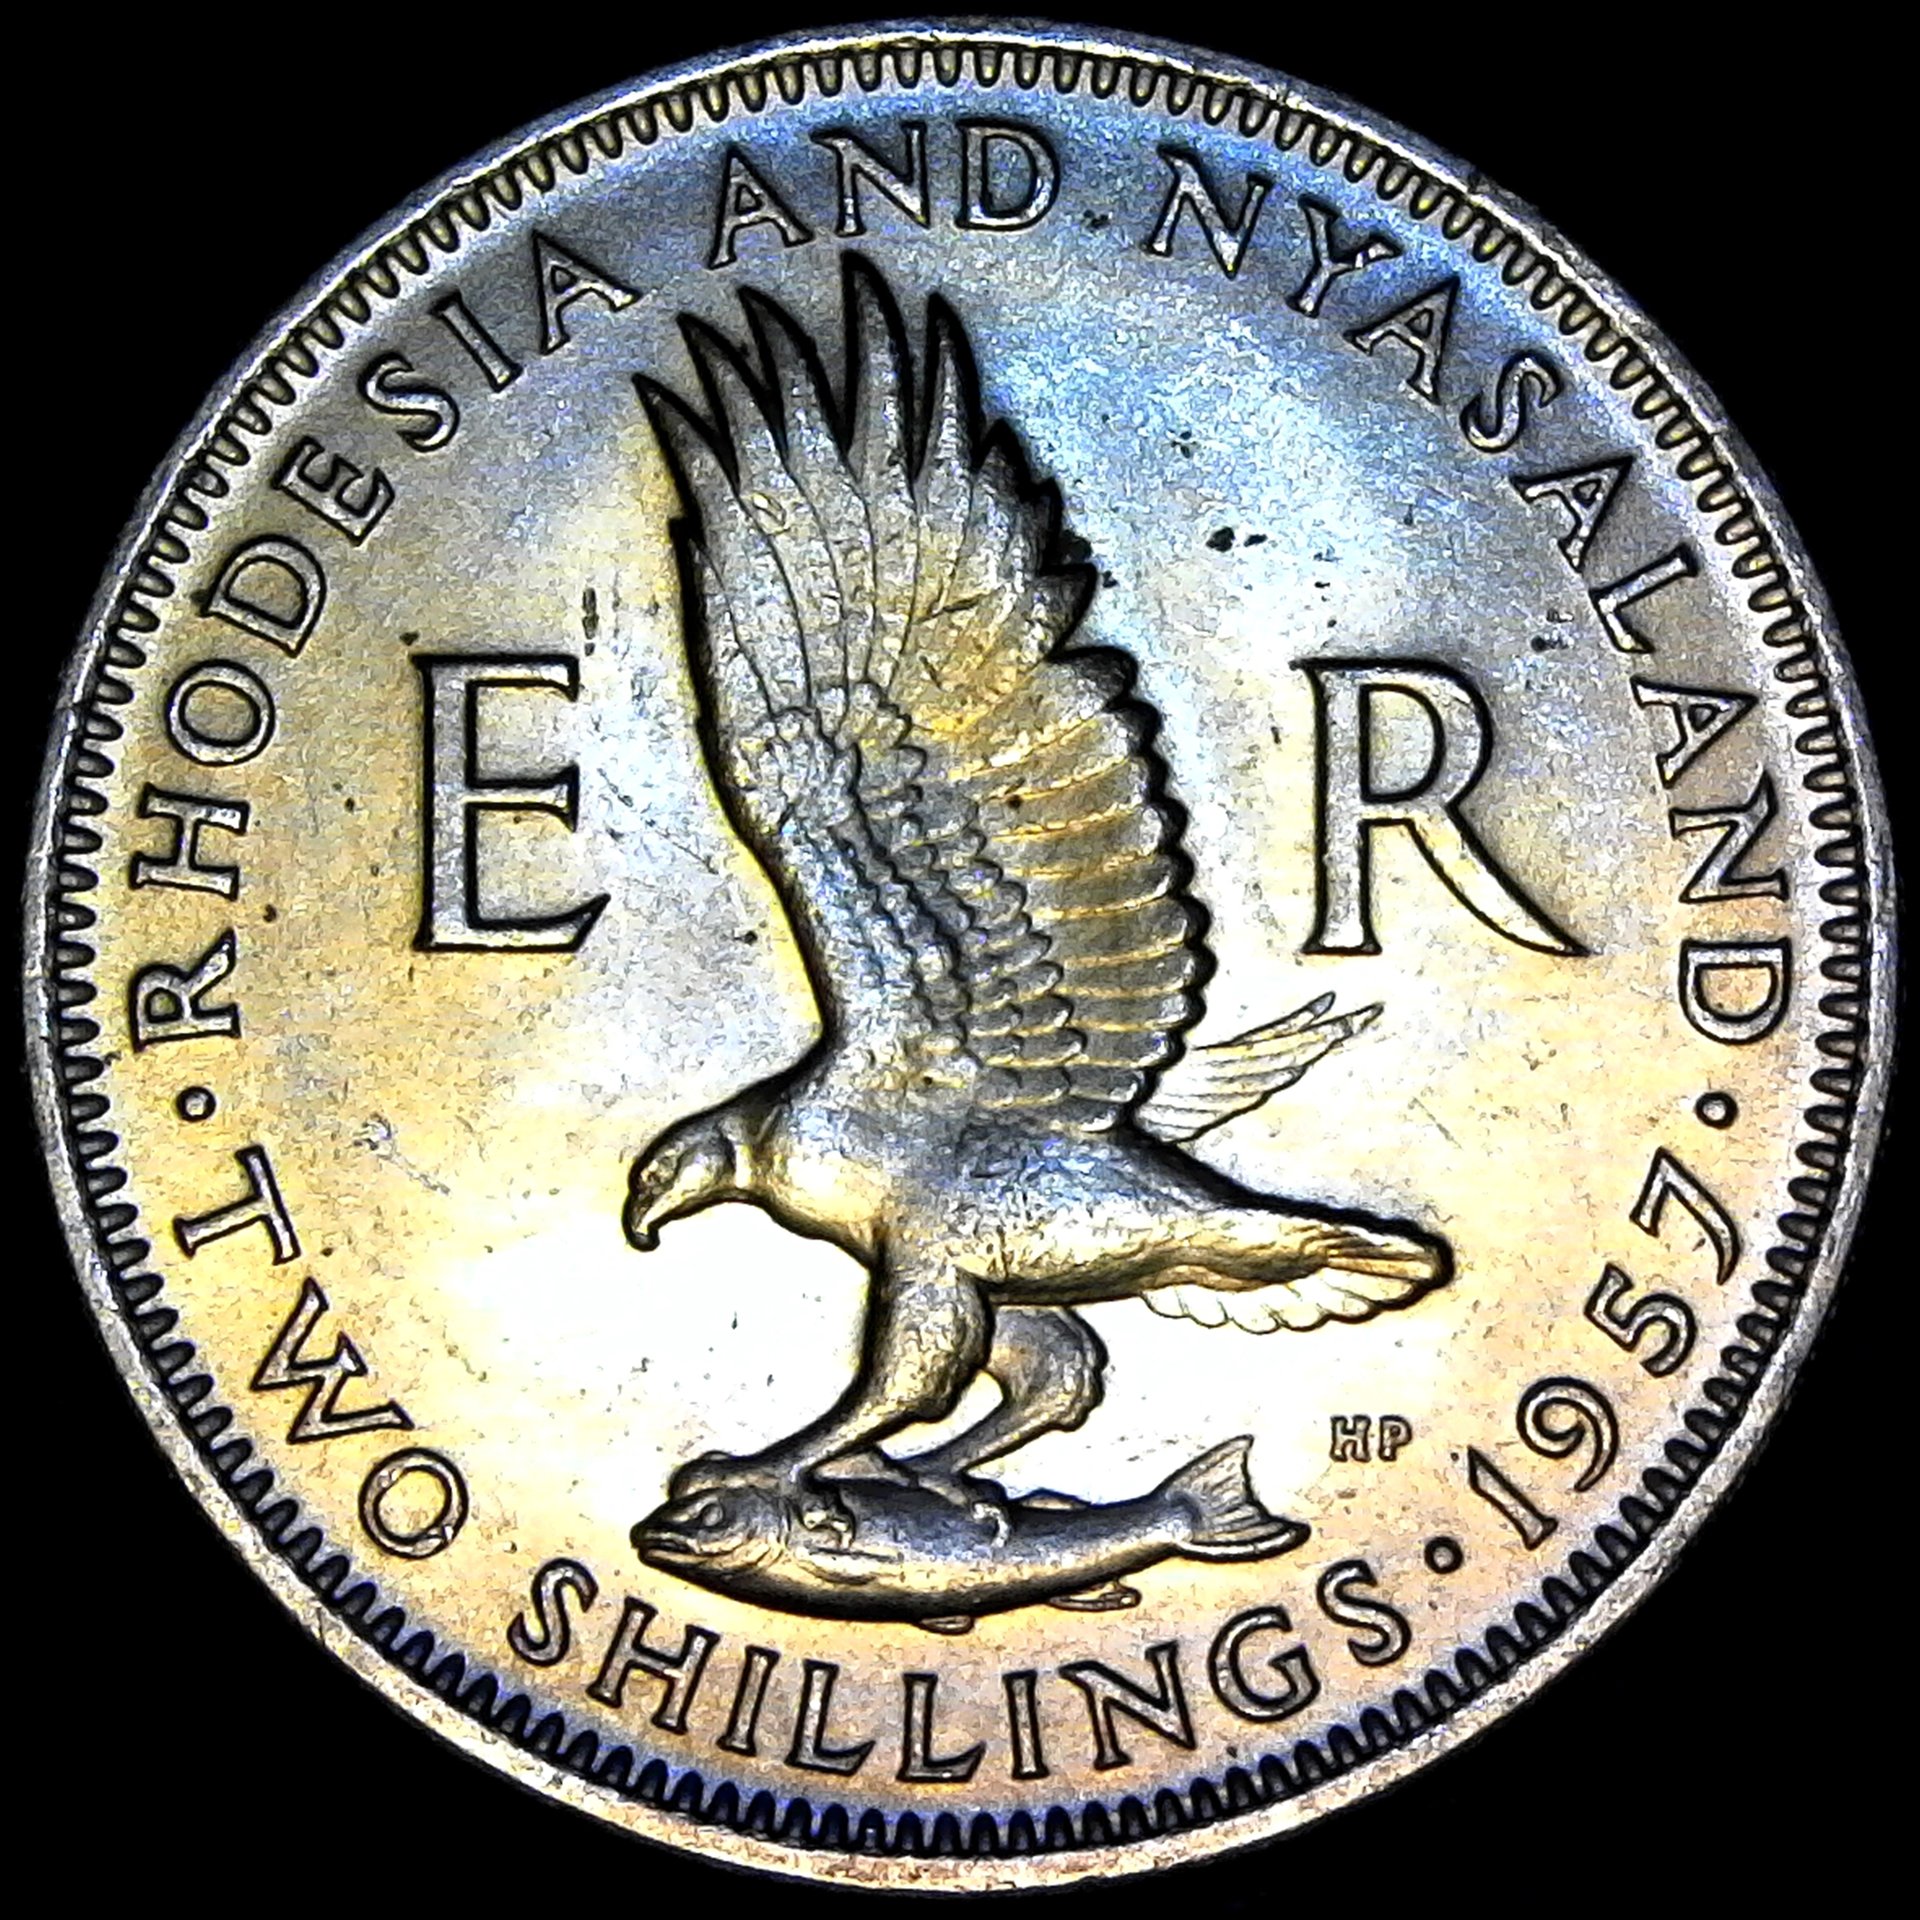 Rhodesia and Nyasaland Two Shillings 1957 rev.jpg